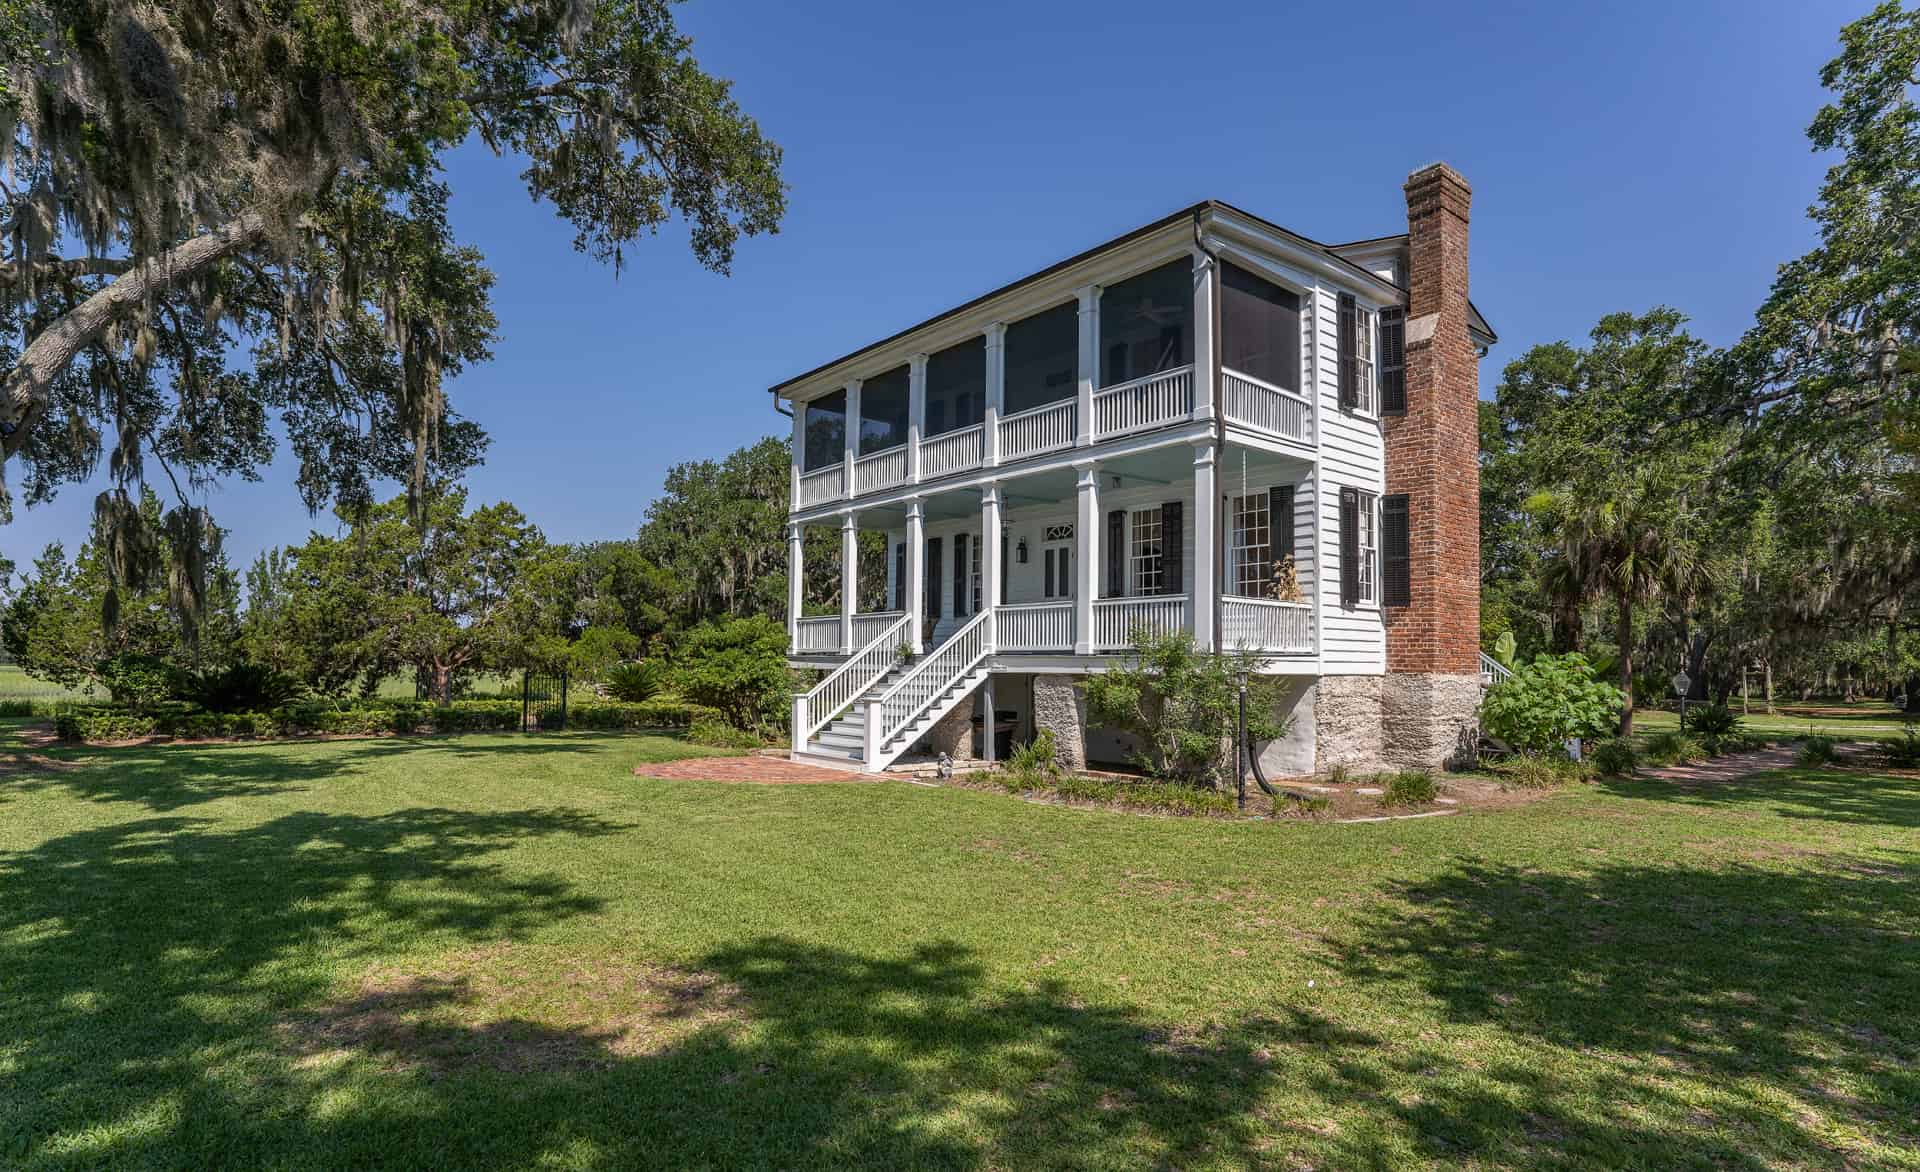 Historic Home South Carolina Tombee Plantation